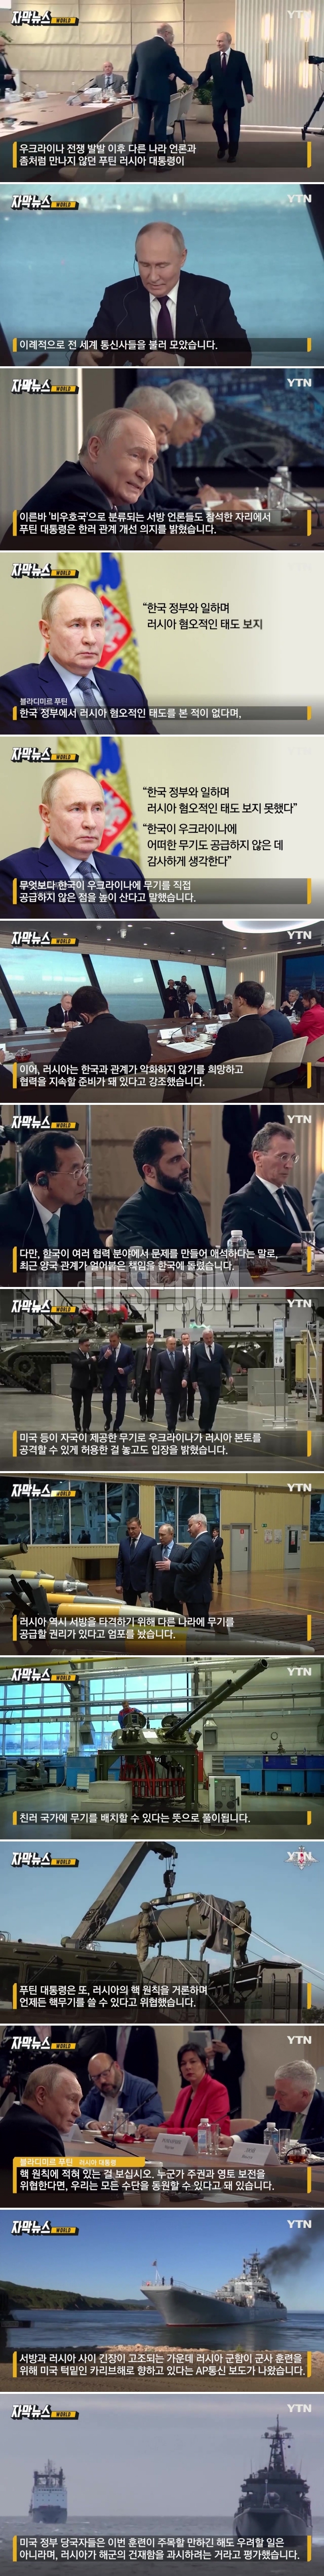 푸틴, 전쟁 이후 ',이례적 행보',…한국 언급하며 한 말.jpg